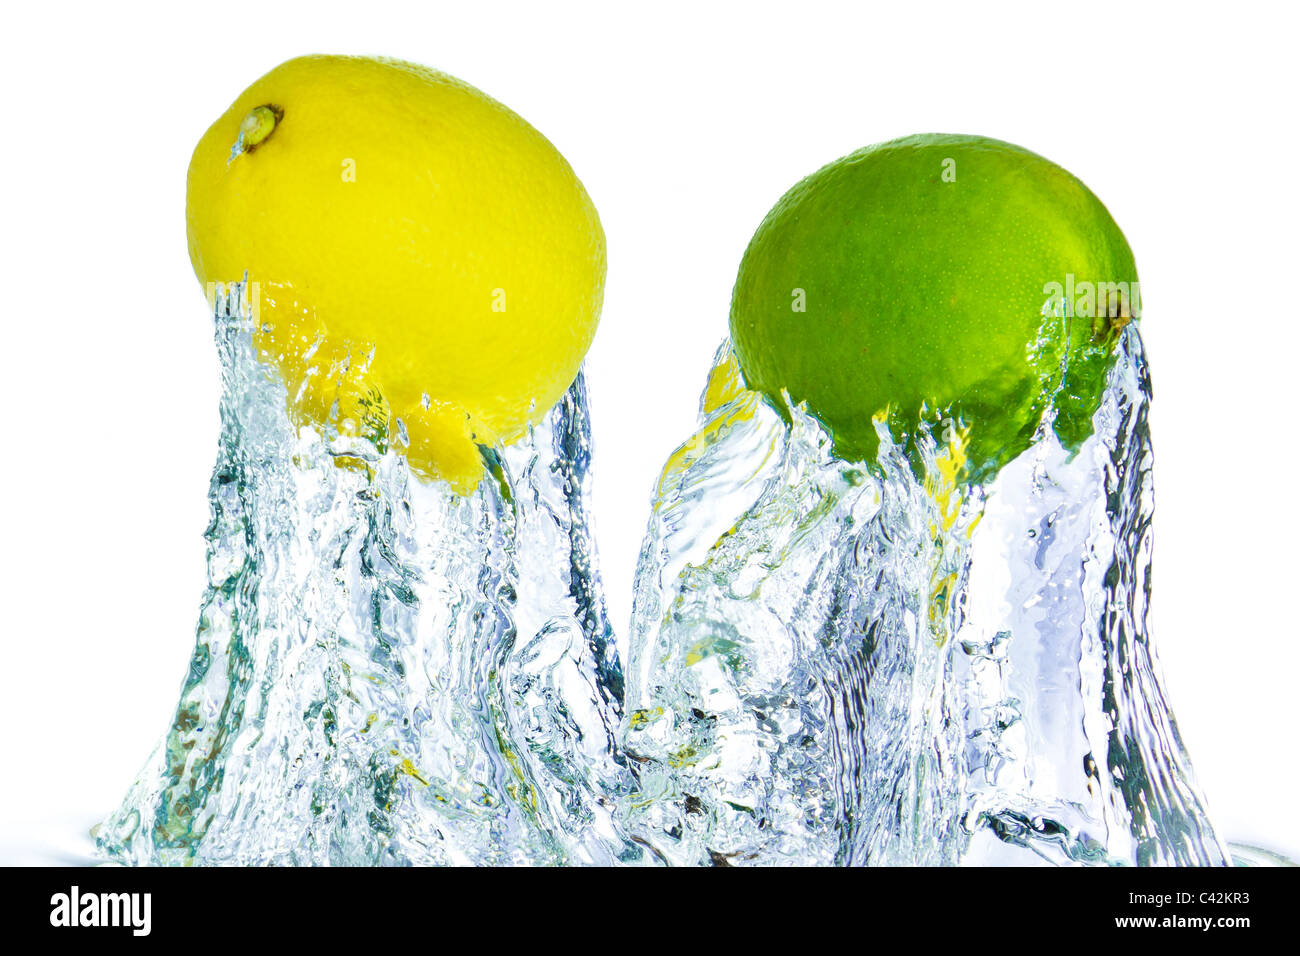 Lime e limone gli spruzzi di acqua isolati su sfondo bianco Foto Stock